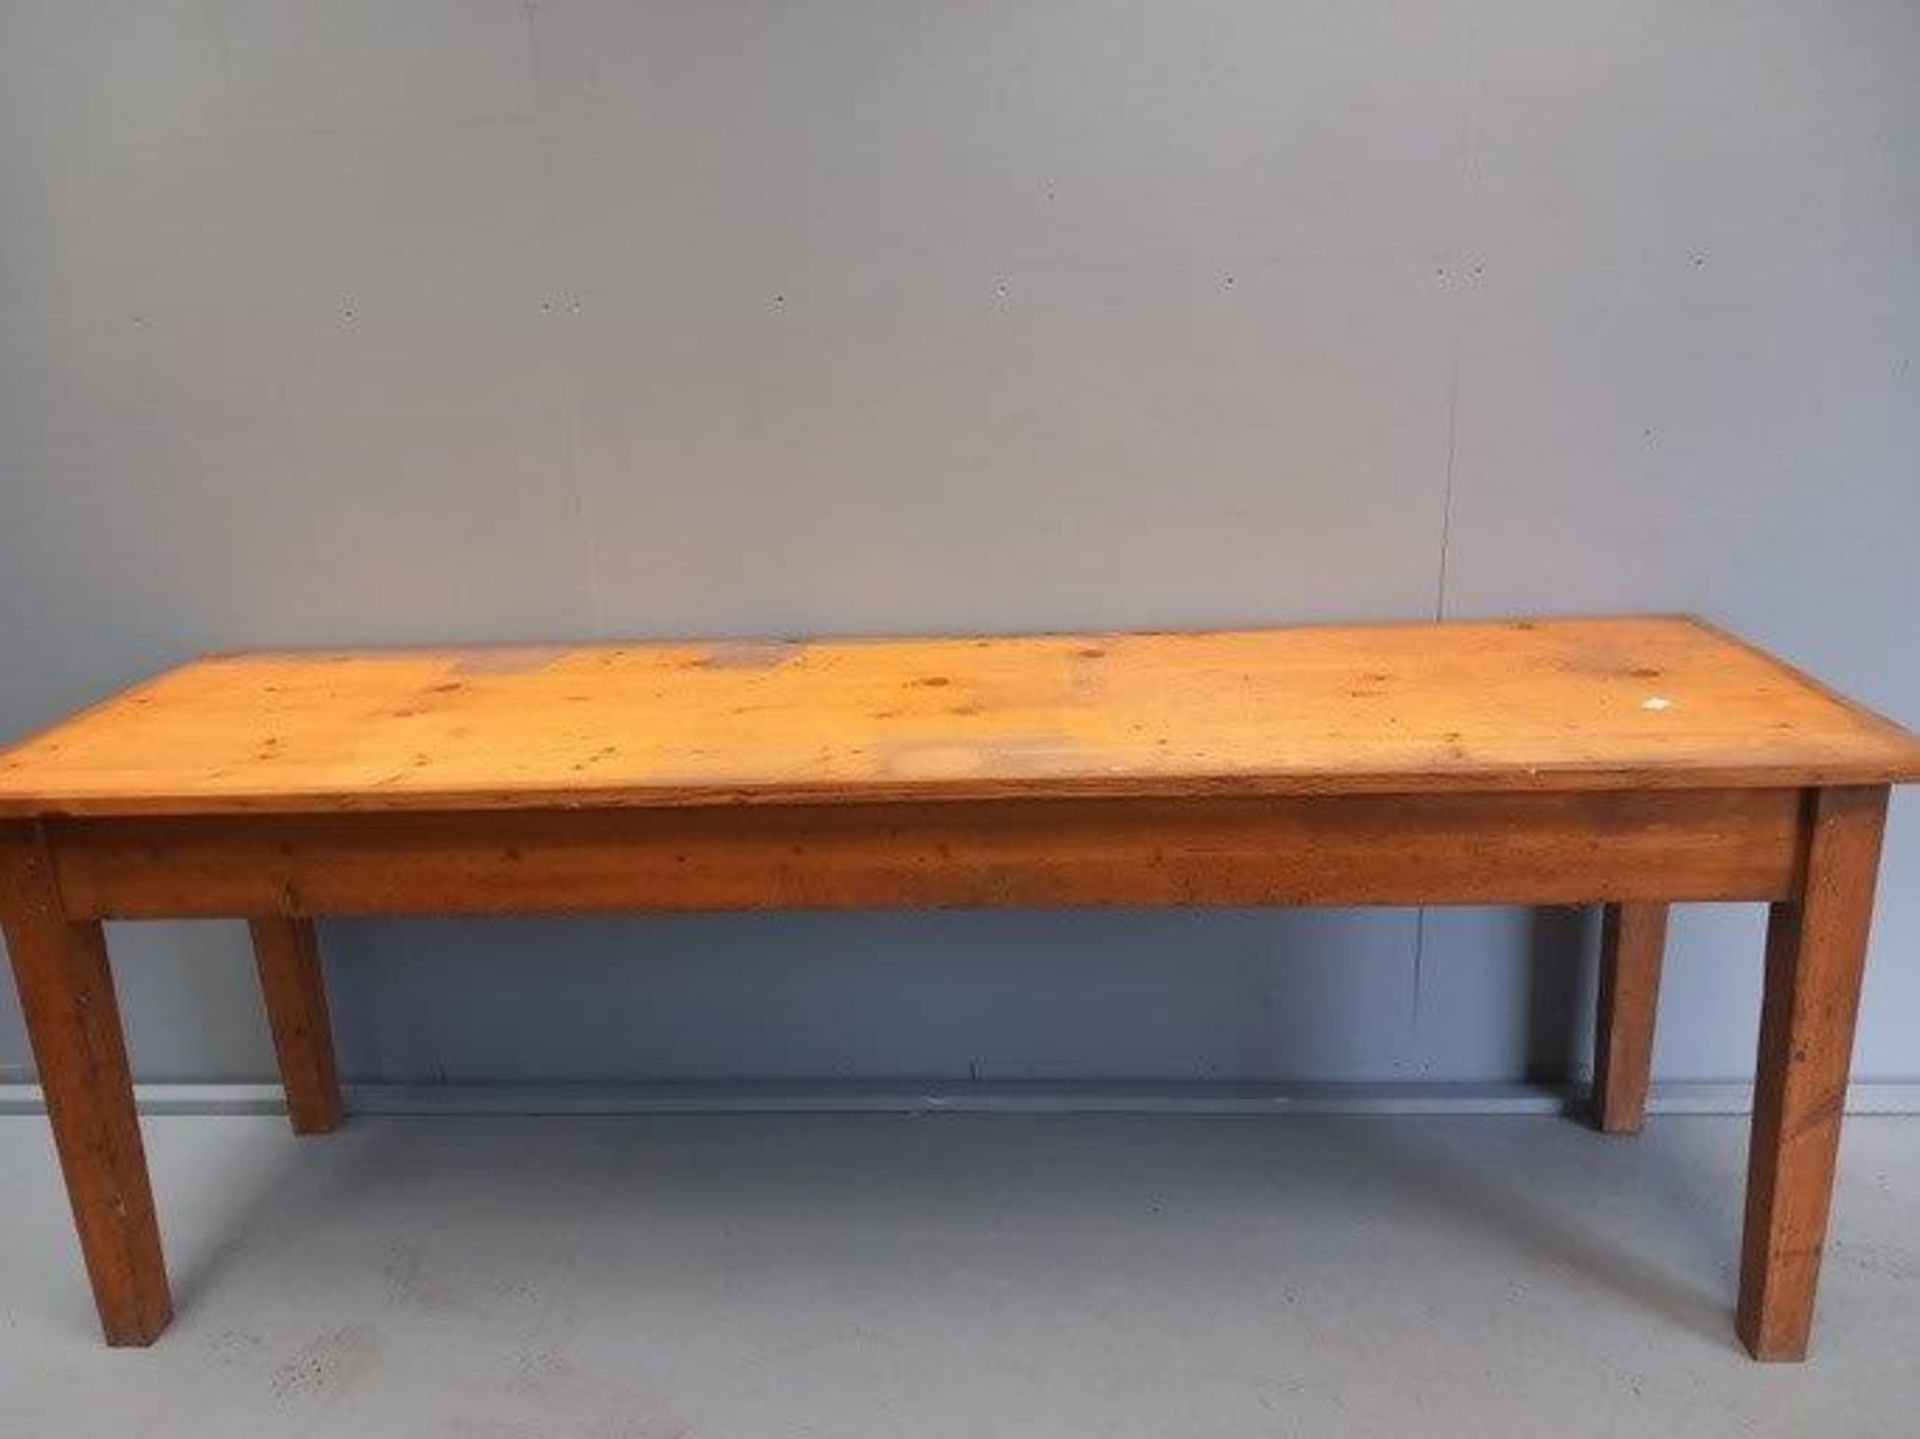 Pine Kitchen Table H76cm x L218cm x W64cm - Image 2 of 2